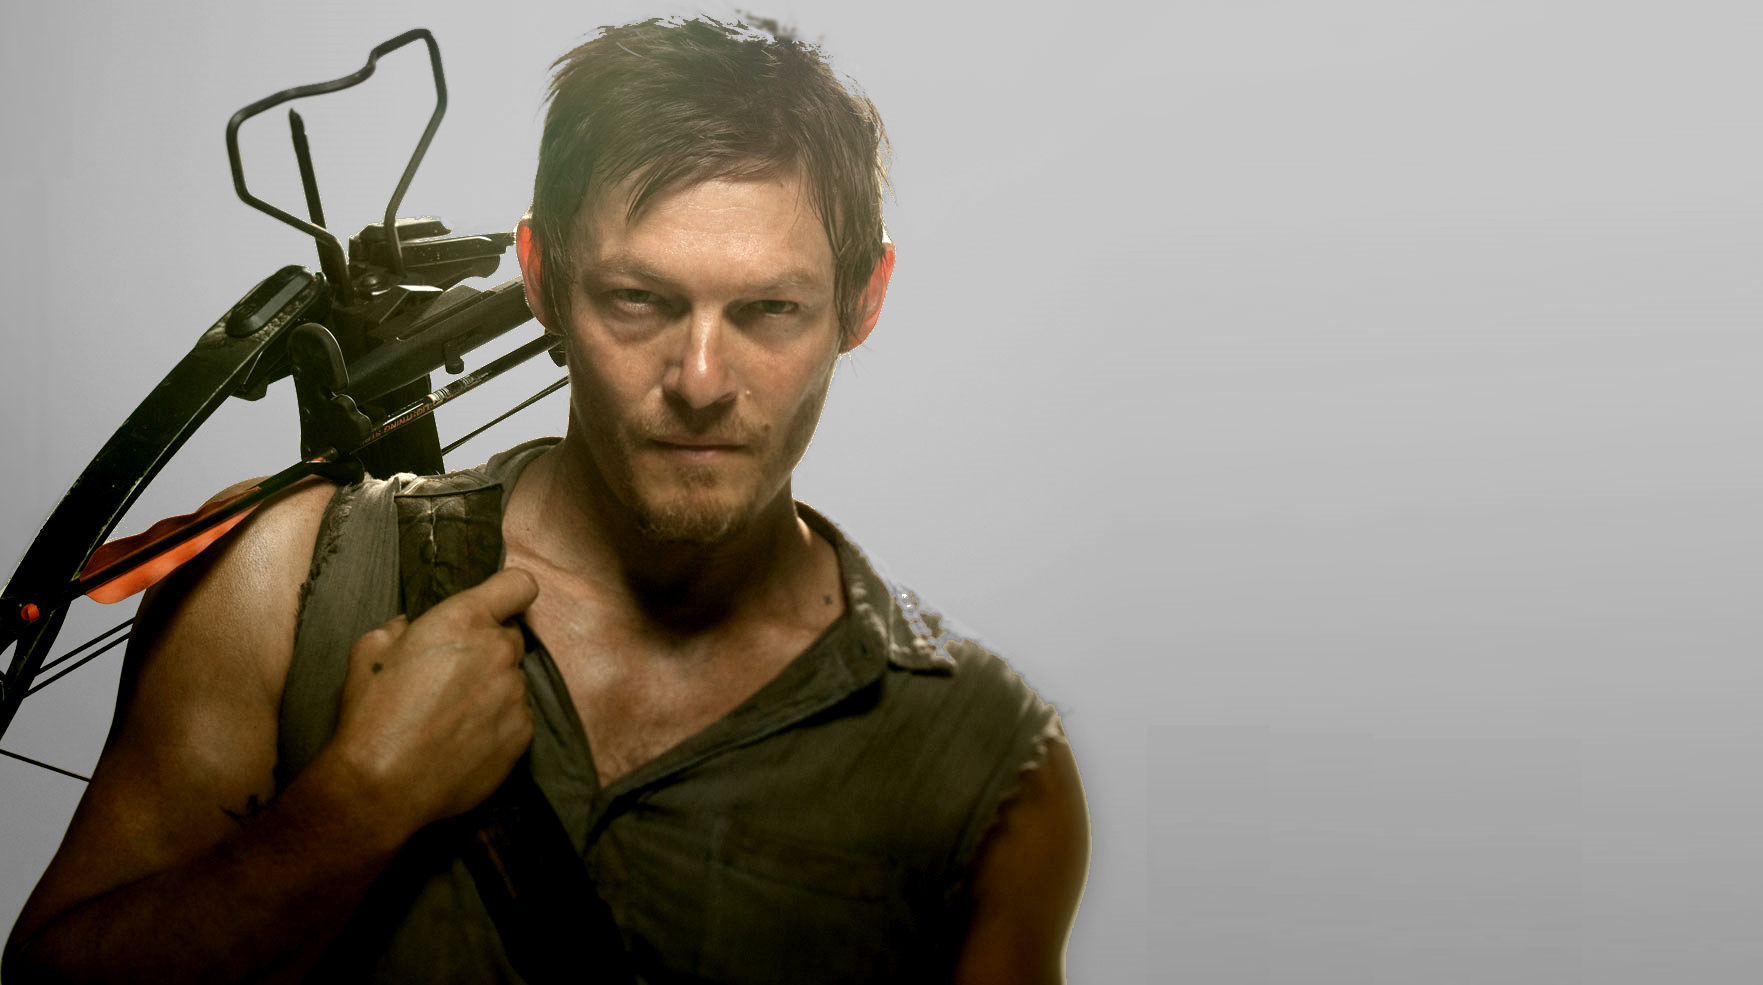 Daryl The Walking Dead , HD Wallpaper & Backgrounds